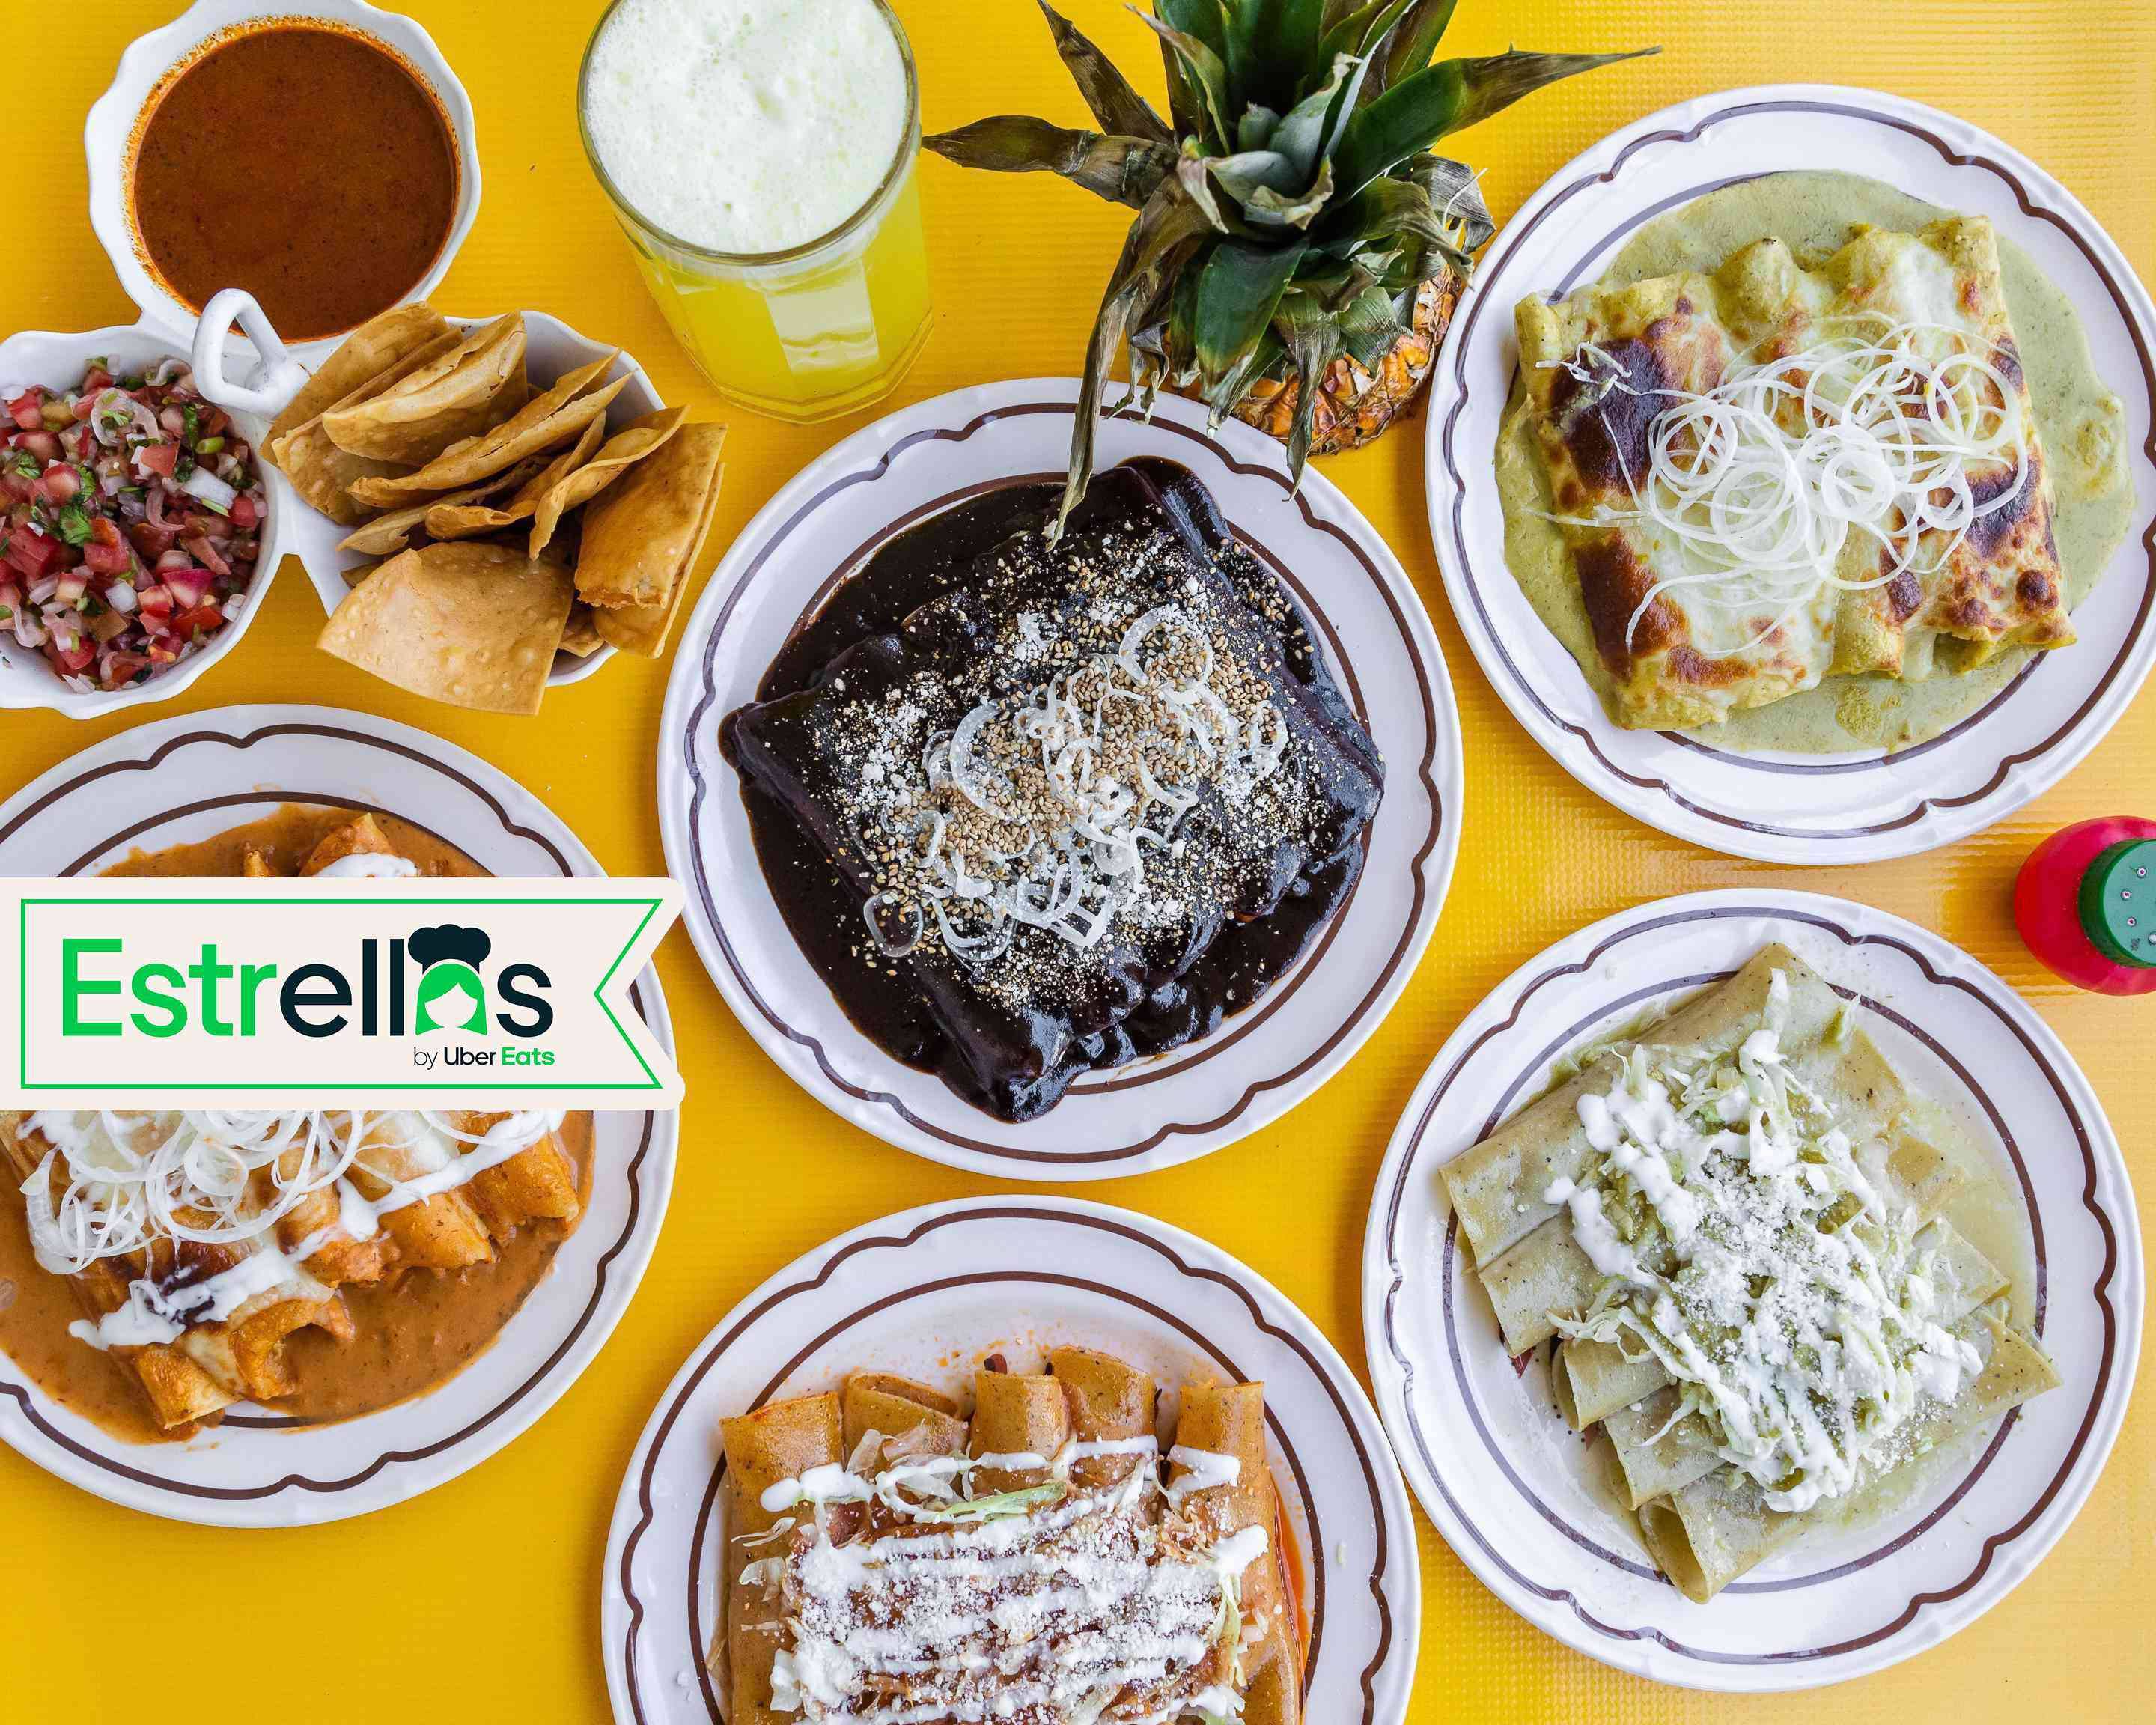 La Casa de la Enchilada Menu Delivery【Menu & Prices】Guadalajara | Uber Eats